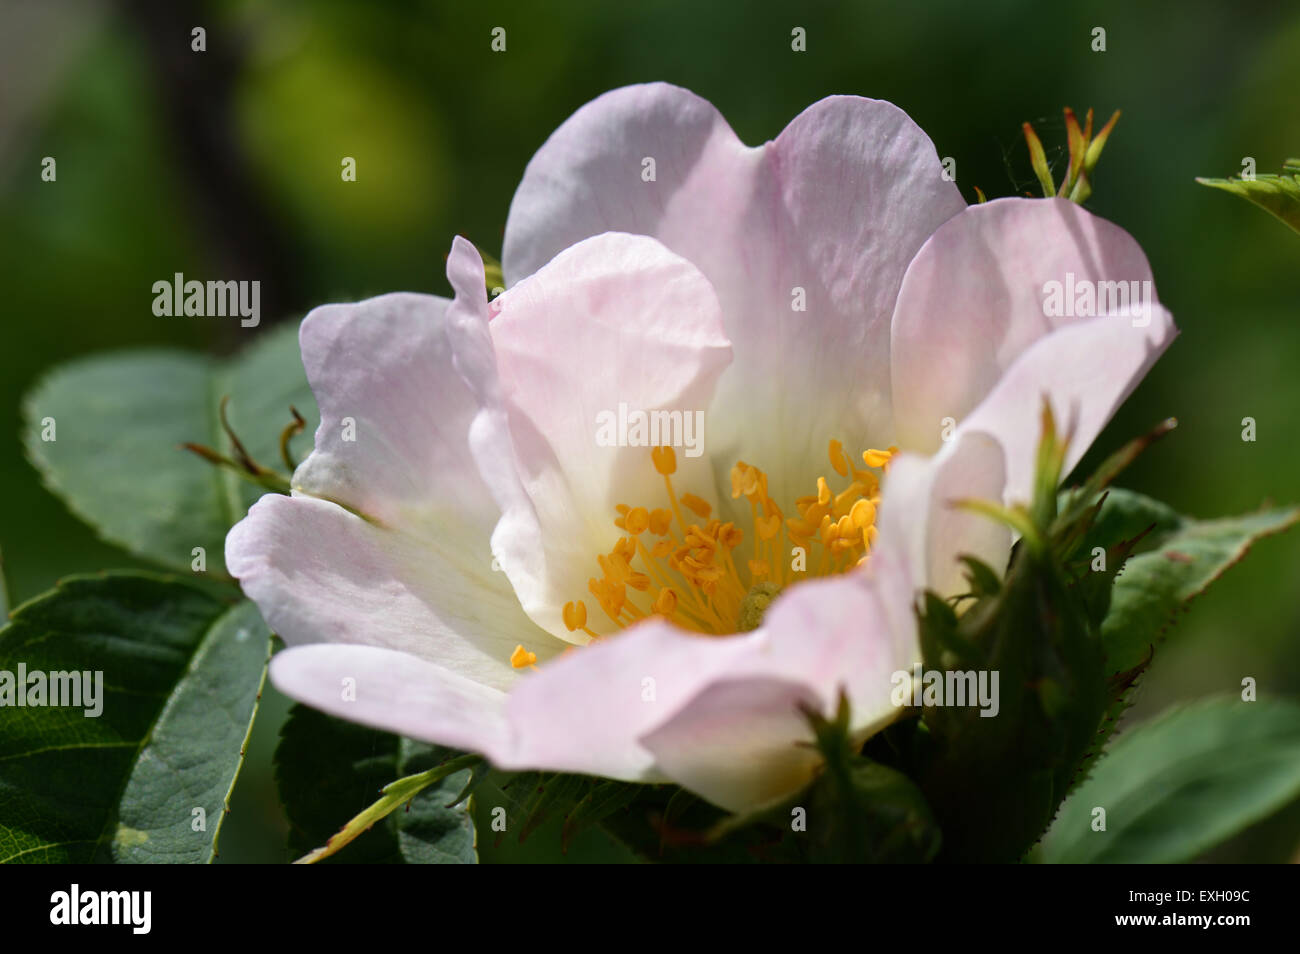 Dog rose, rosa canina, la floraison des plantes grimpantes sauvages avec des fleurs roses et blanches en été, Berkshire, juin Banque D'Images